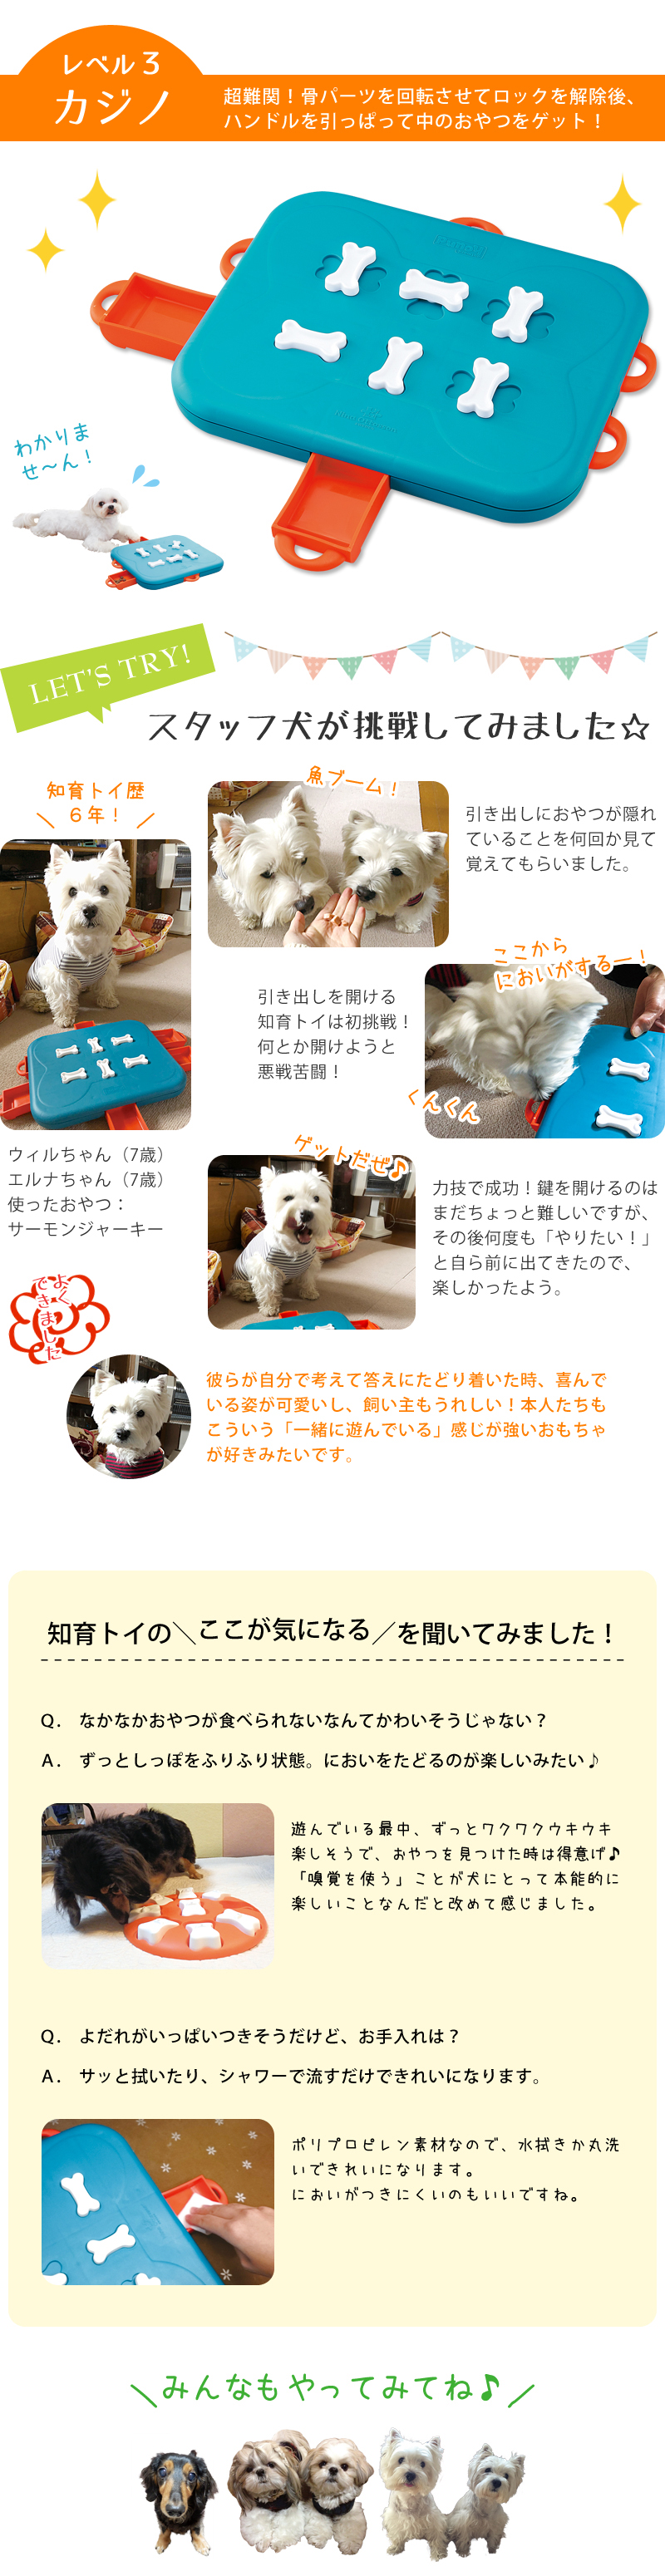 ニーナ オットソン トリーツトイ 犬用知育玩具 犬用おもちゃ ペット用品の通販サイト ペピイ Peppy